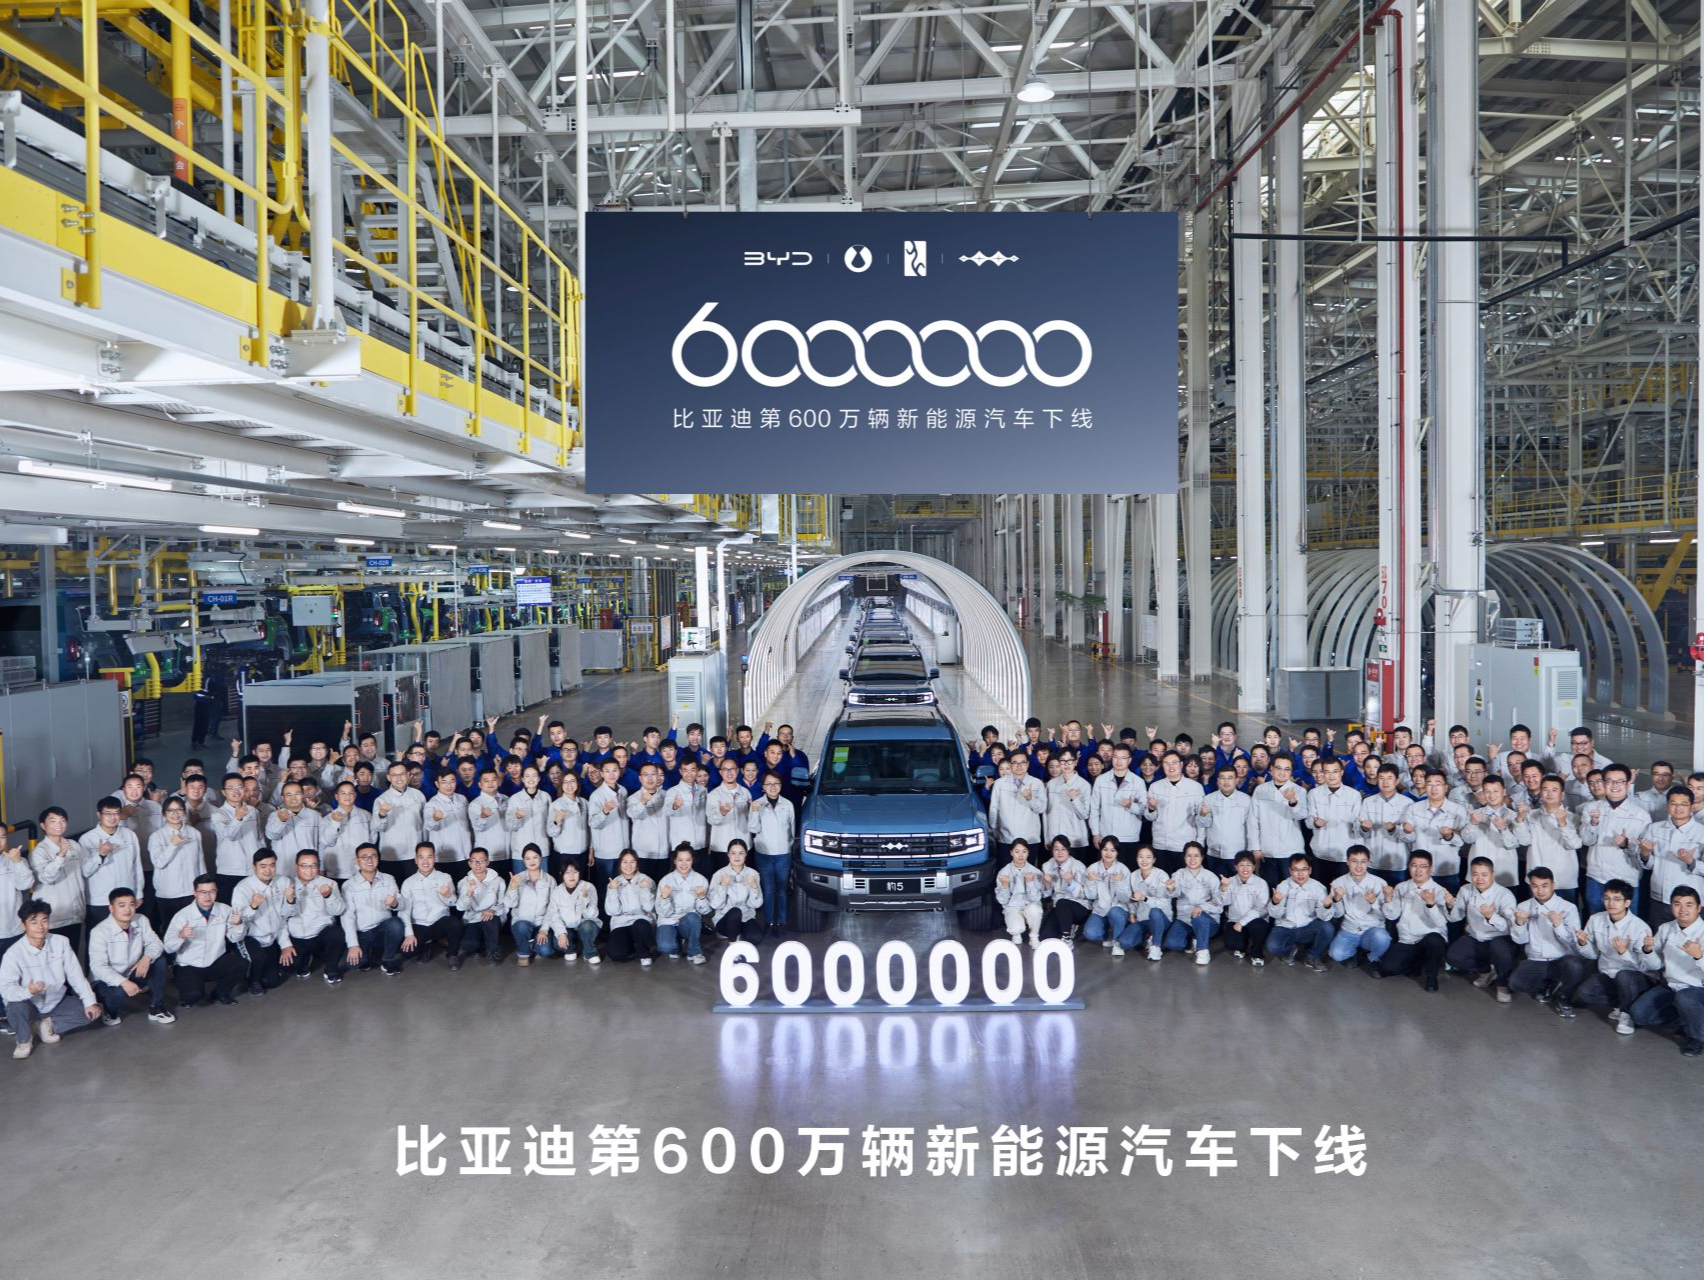 比亚迪第600万辆新能源汽车在郑州下线